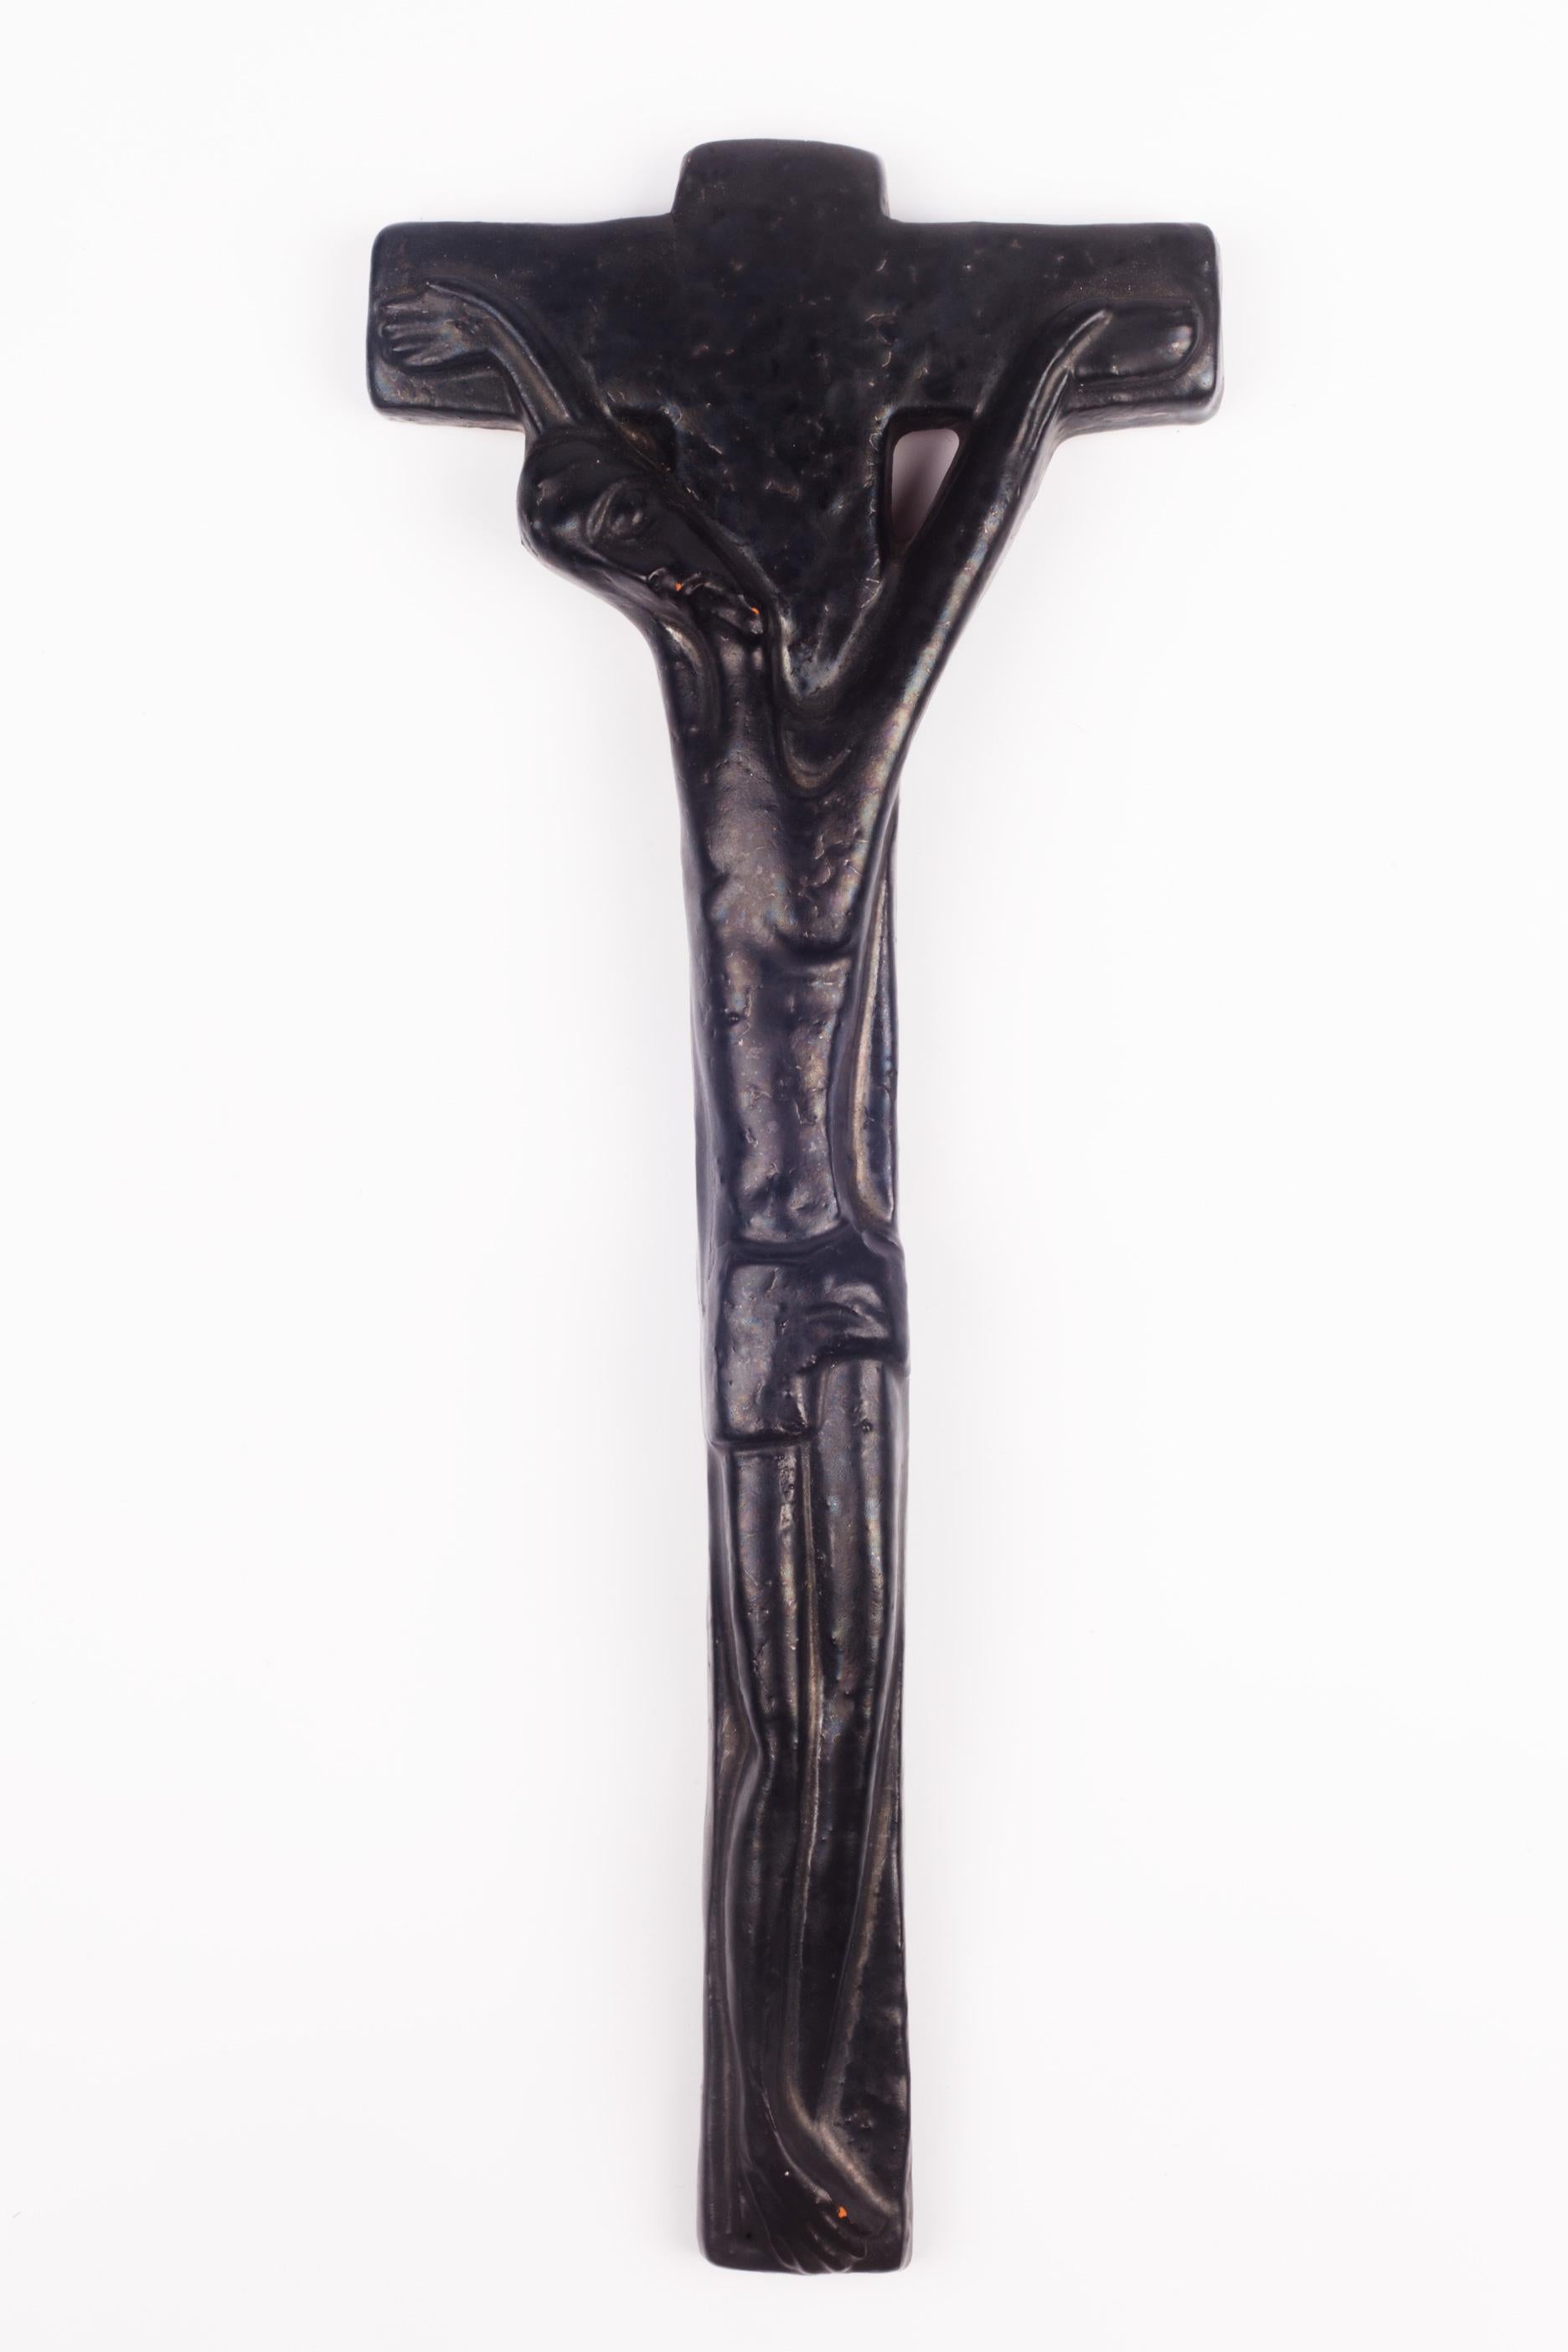 Modern European Crucifix in Glazed Ceramic, Black, 1970s